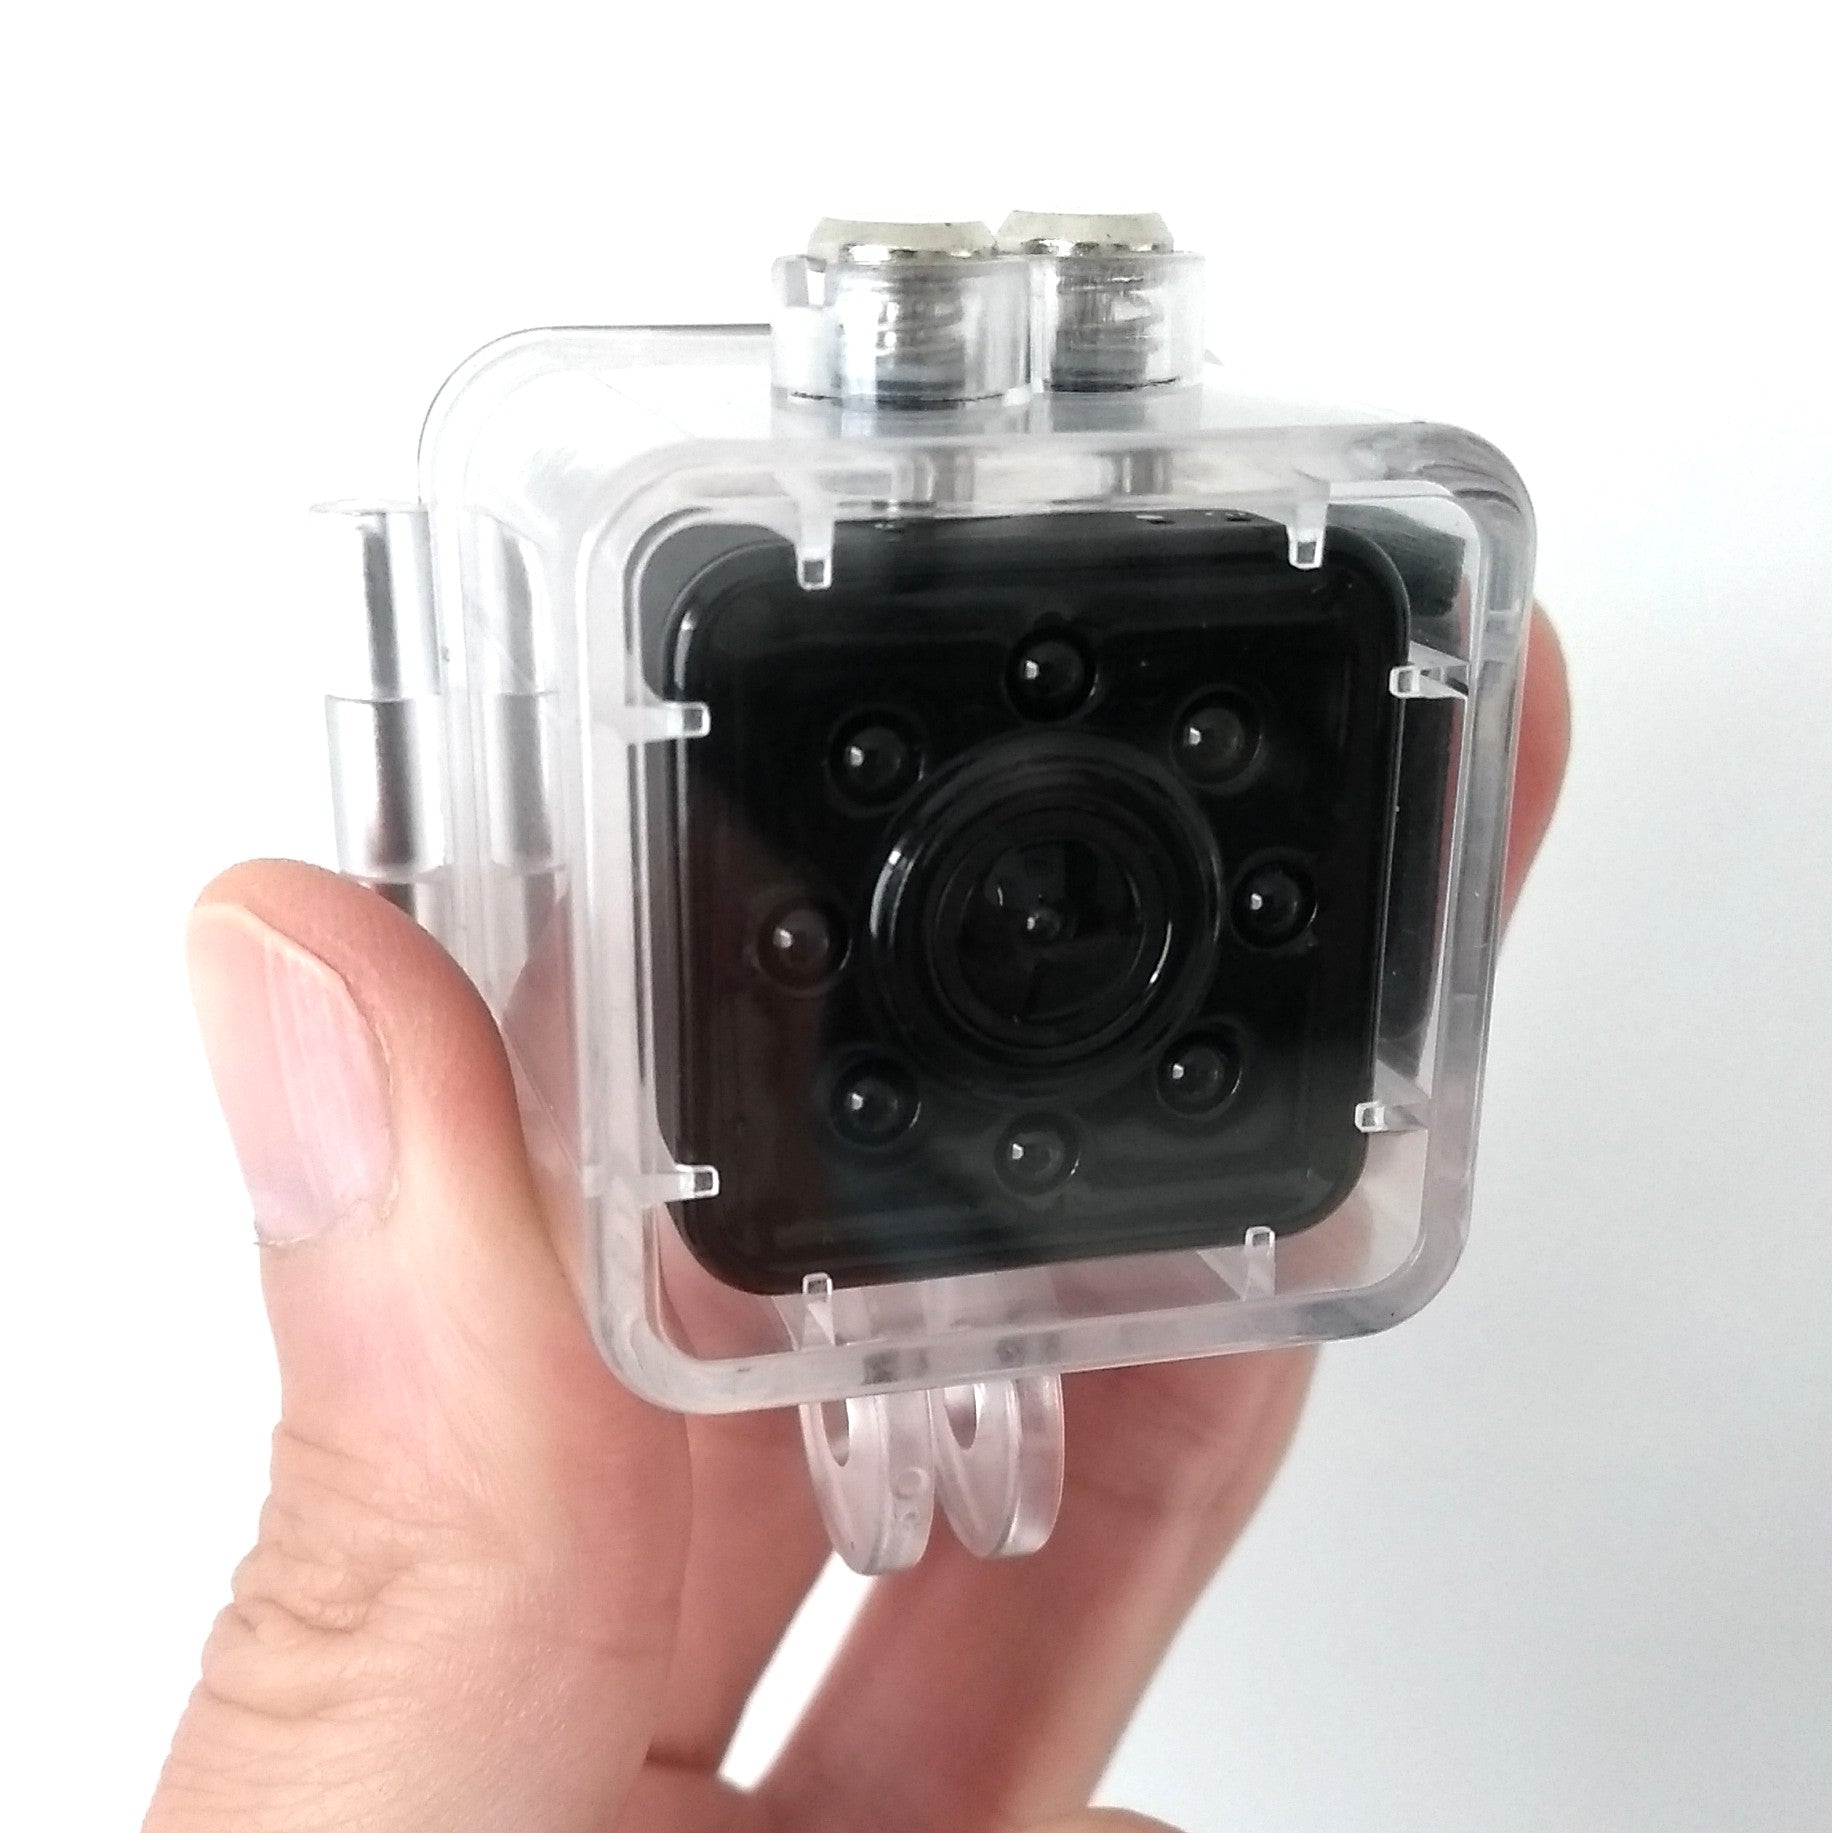 SQ13 Mini Action Camera, really tiny